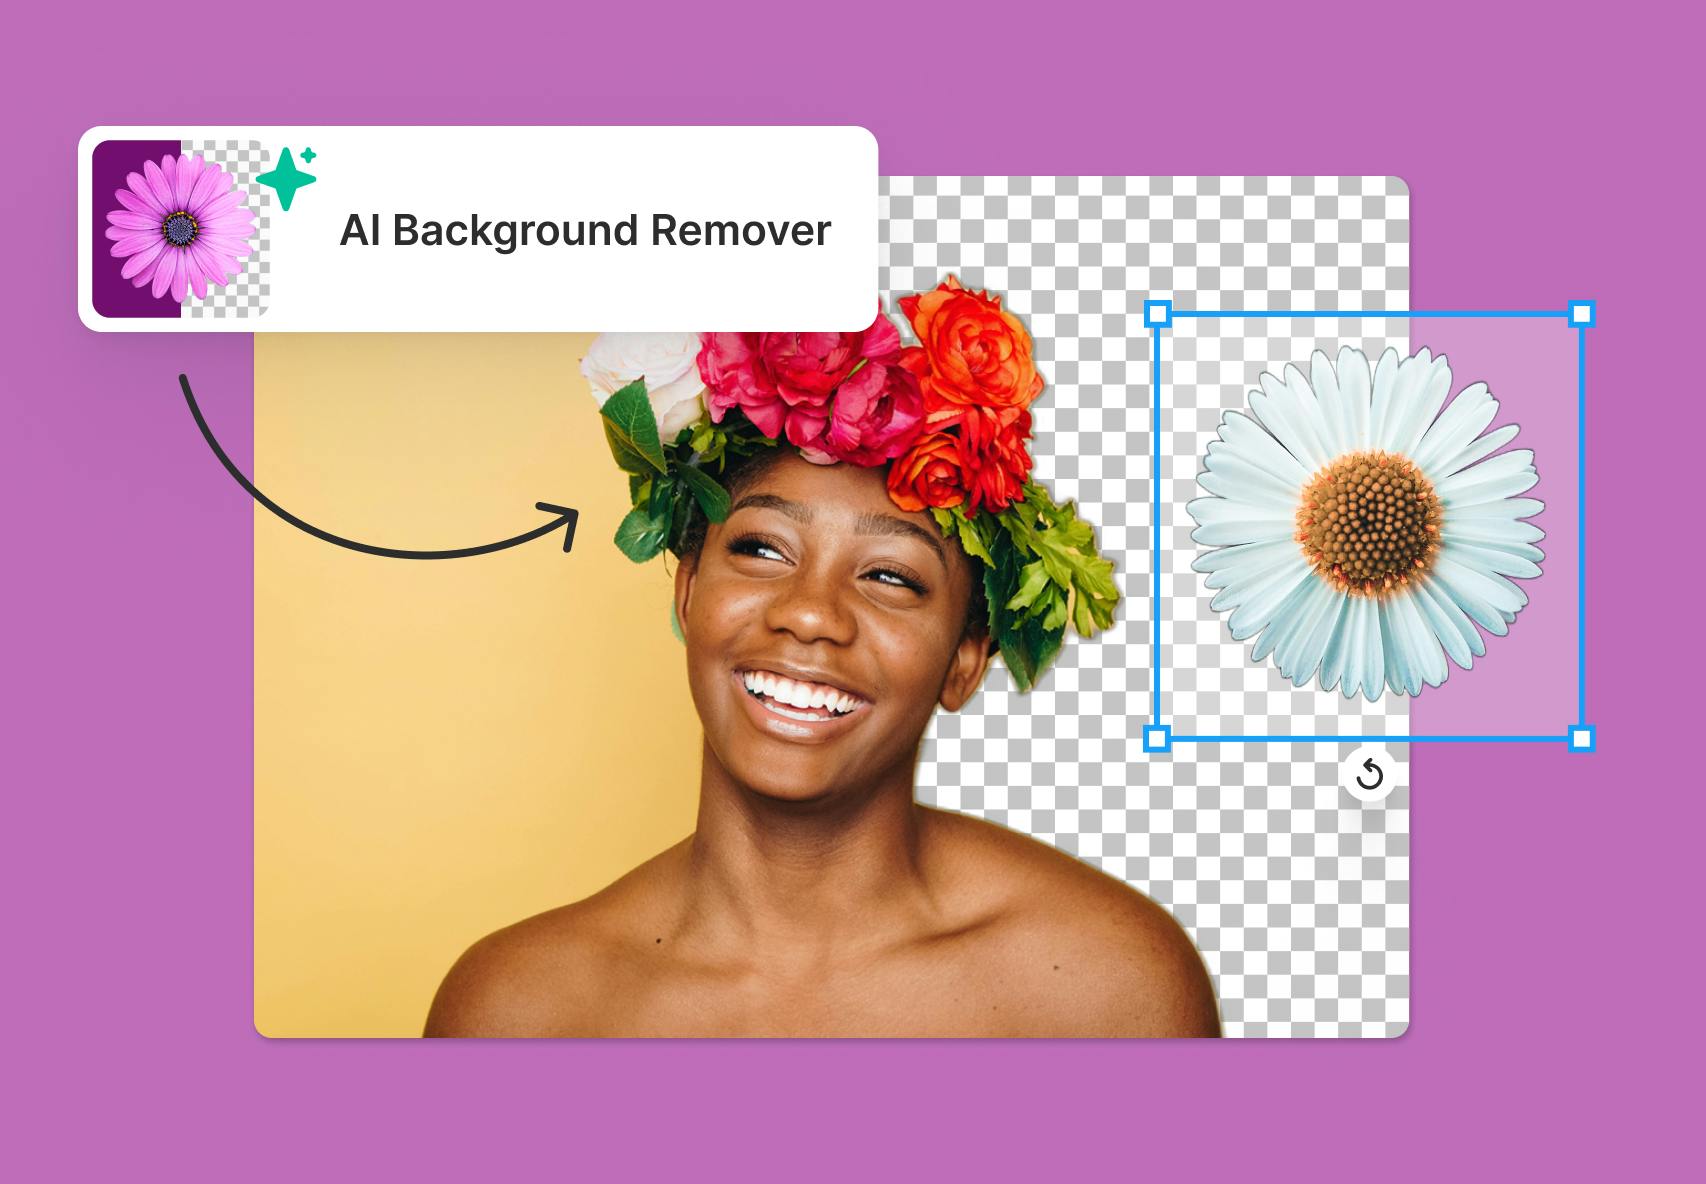 AI Background Remover là công cụ đột phá giúp bạn loại bỏ nền của các ảnh một cách nhanh chóng và độ chính xác cao. Với trí thông minh nhân tạo và khả năng tối ưu hóa hình ảnh, công cụ này giúp các bức ảnh trở nên rõ ràng và sắc nét hơn, tạo ra những bức ảnh đẹp và chuyên nghiệp.